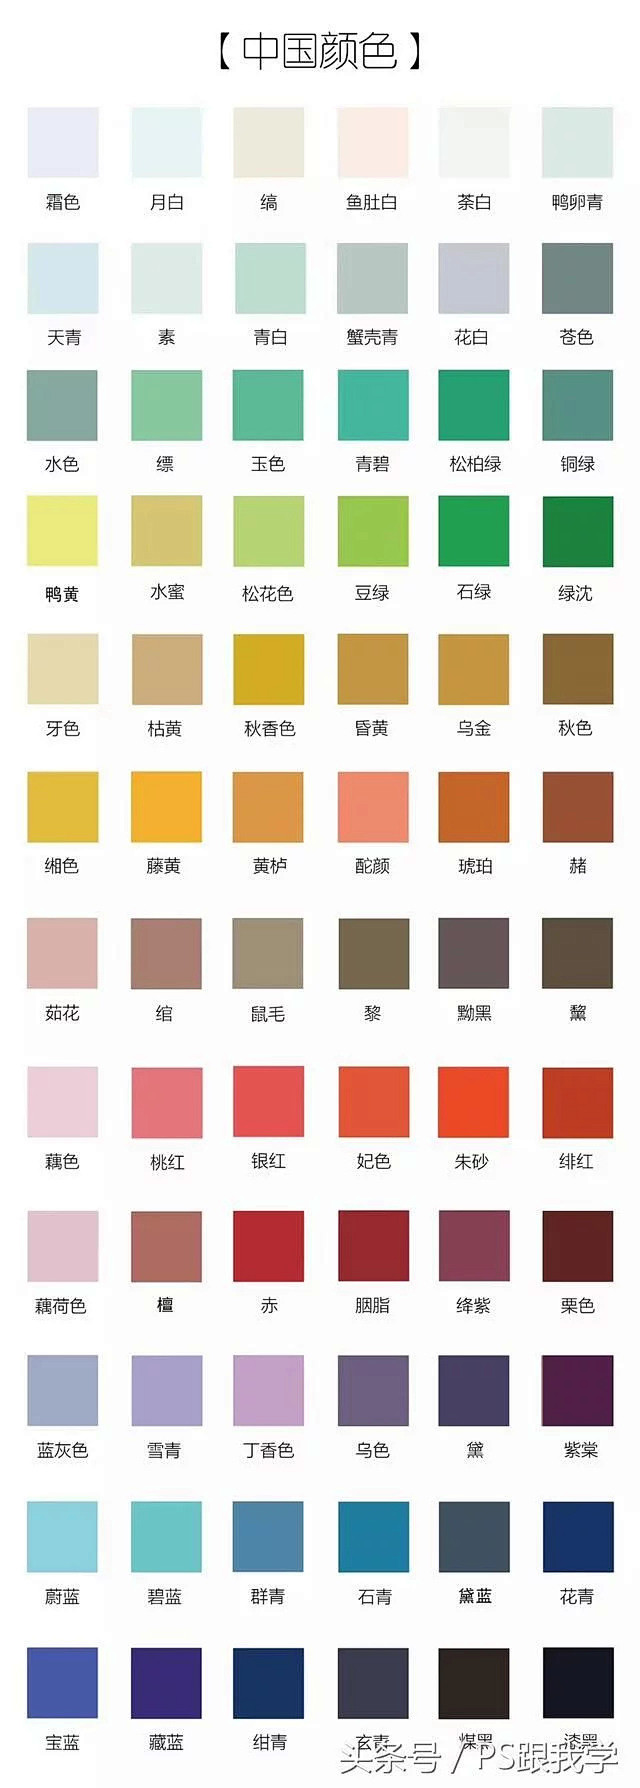 《延禧攻略》色彩演绎究竟运用的是中国颜色...